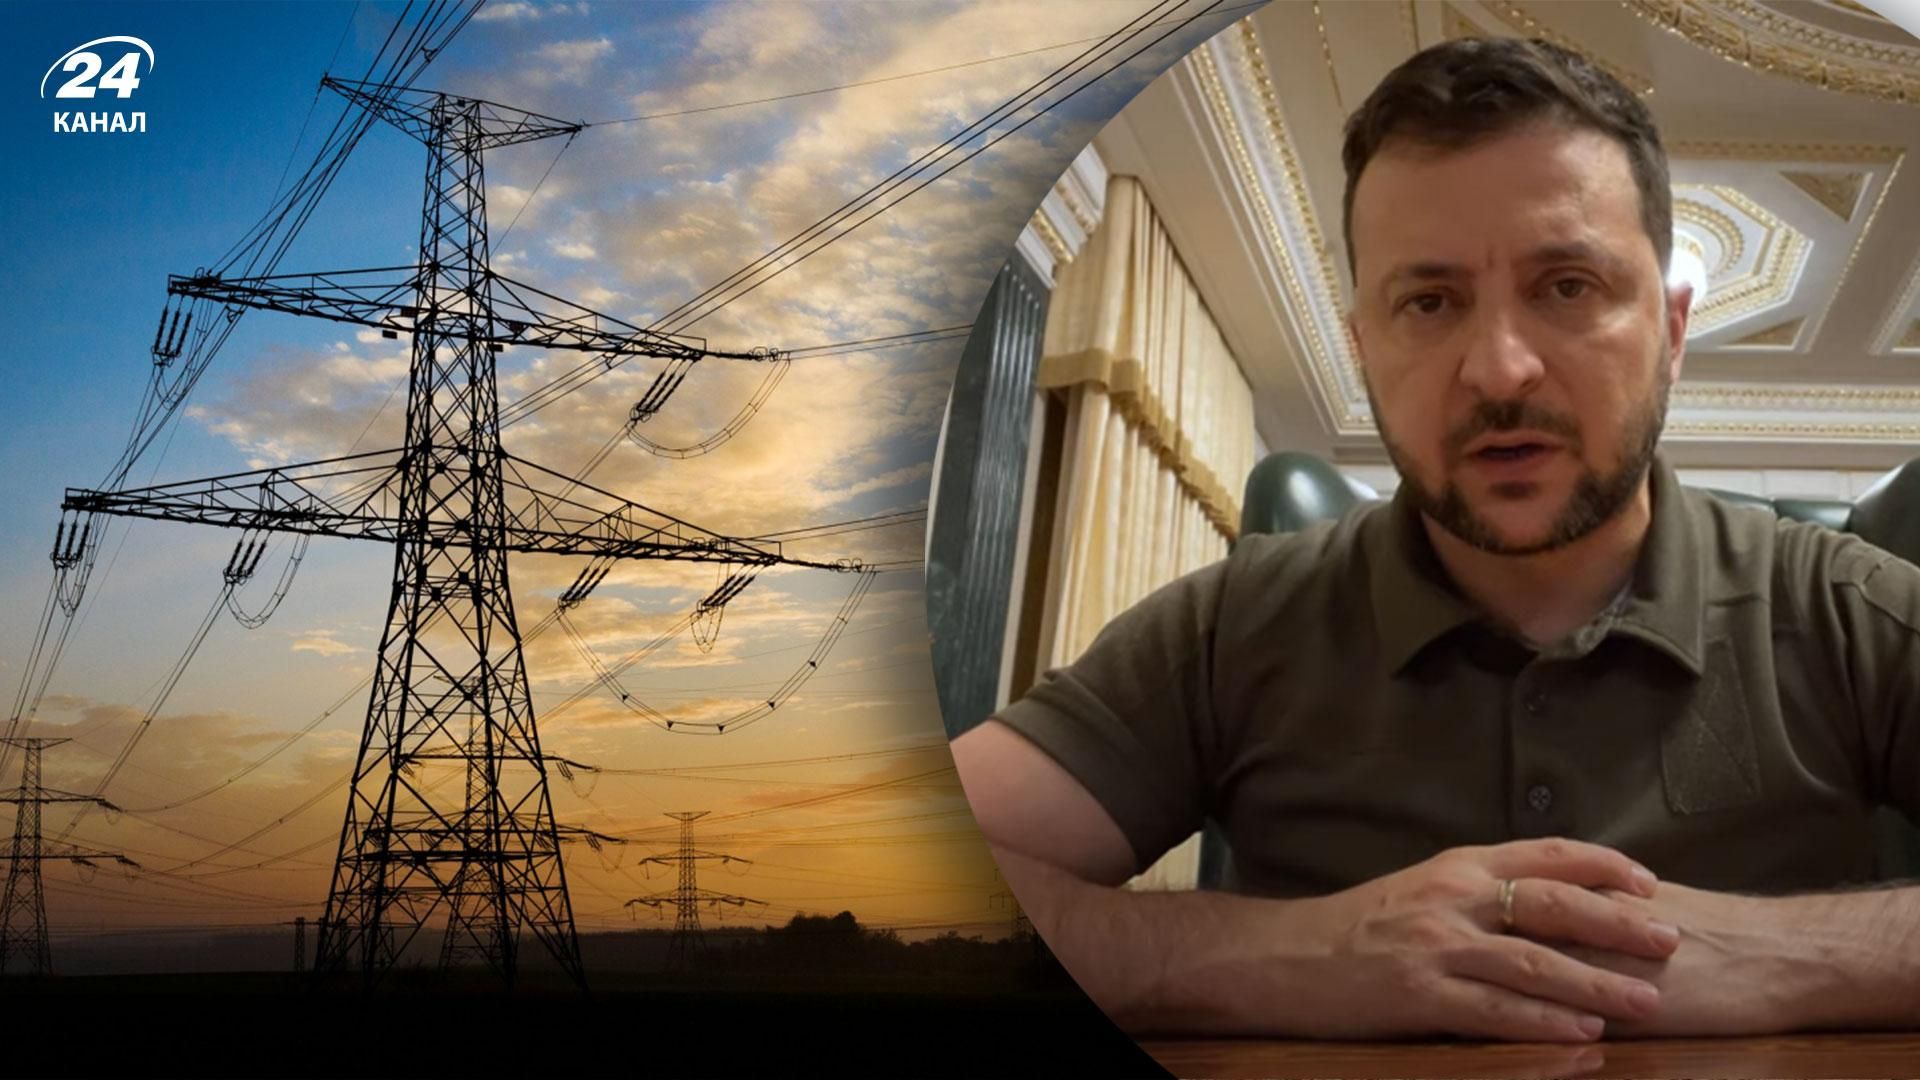 Експорт електроенергії в Європу - Зеленський обіцяє зробити Україну гарантом безпеки - 24 Канал